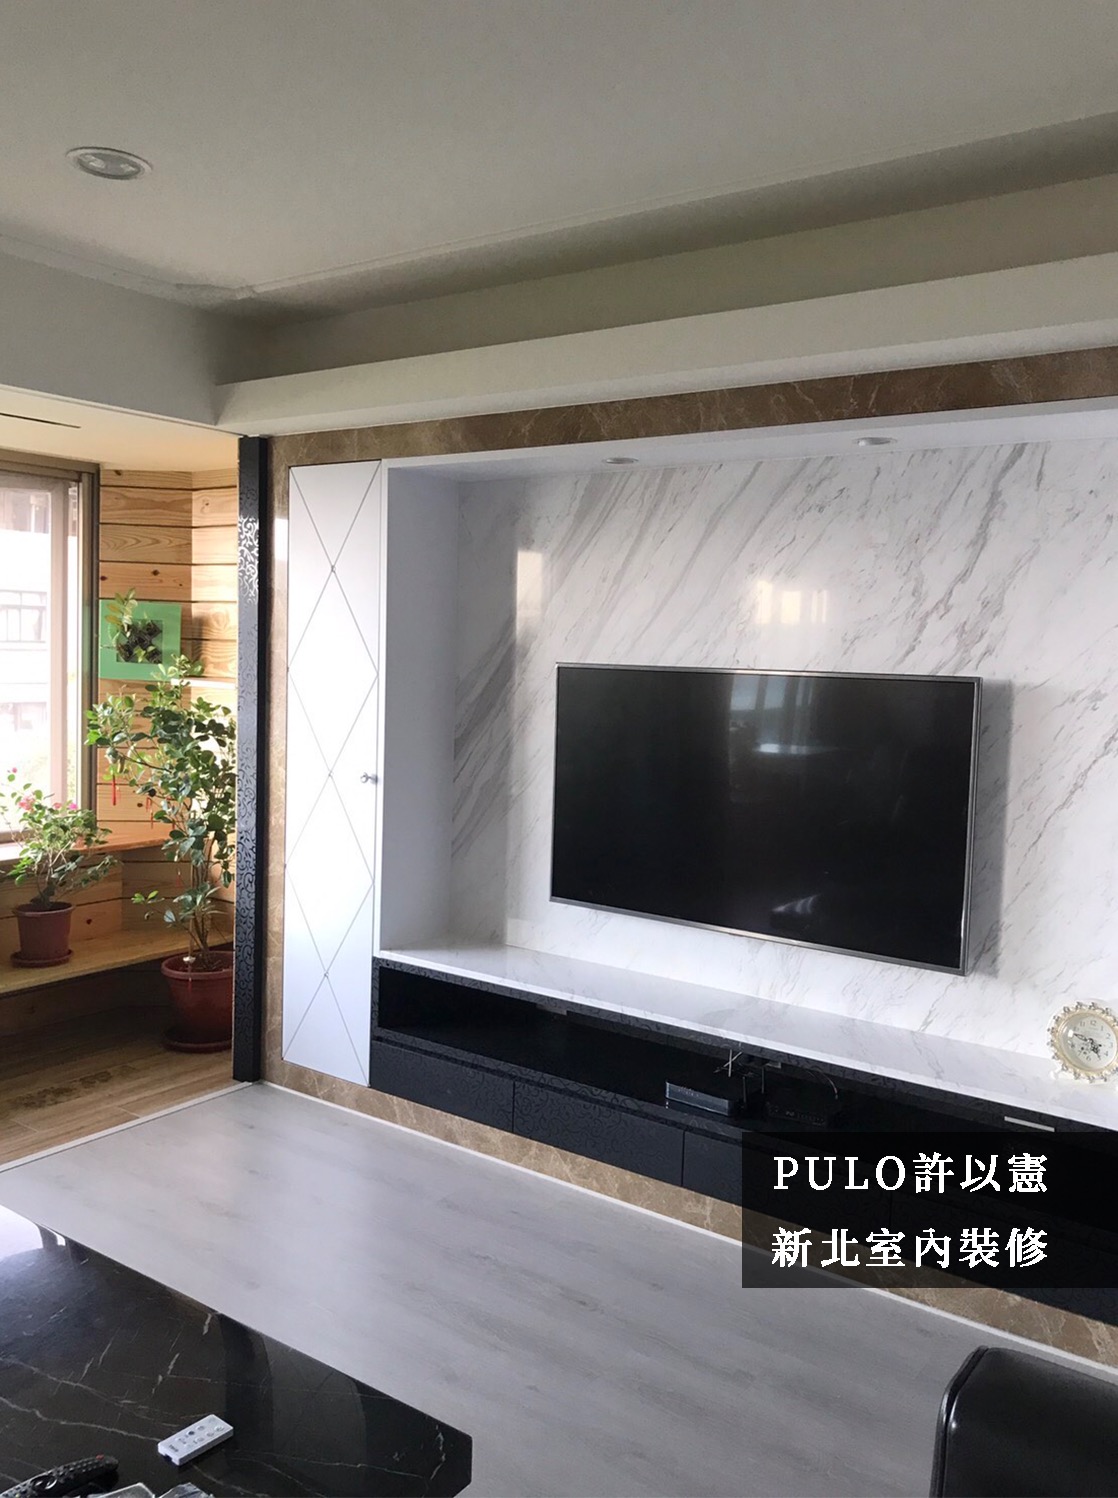 以白色調的大理石磚為電視主牆，邊框則選褐色調的大理石，利用跳色擺脫單調感。陽台則使用不同材質地板區分空間，且捨棄隔間的設計來換取更寬闊的環境，將整片自然景觀一併納入家中。-PULO裝潢平台